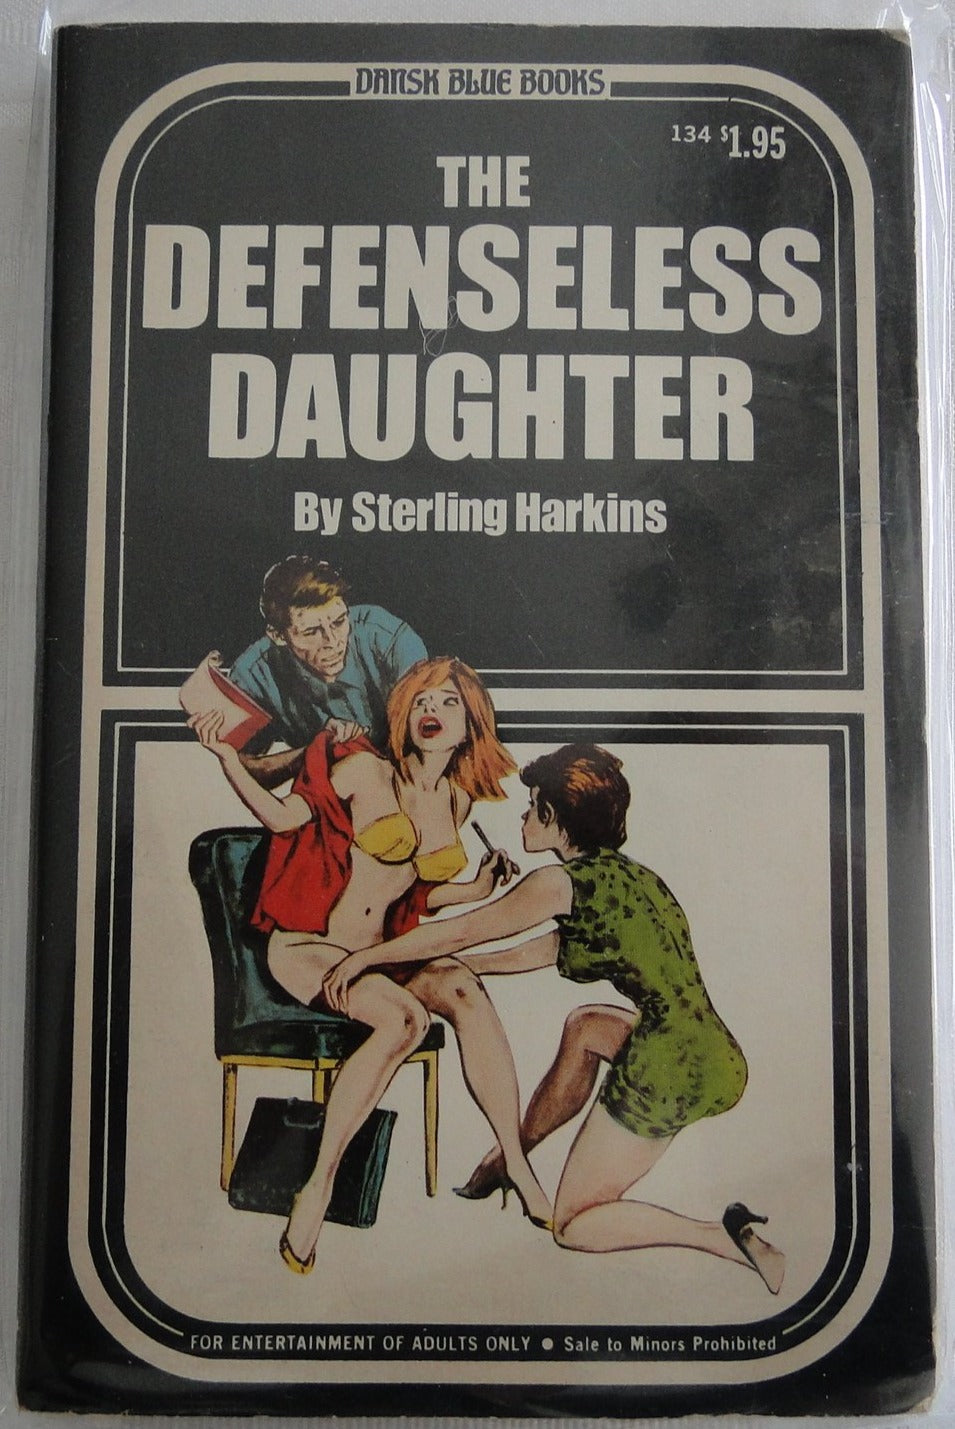 Vintage Adult Paperback Novel/Book The Defenseless Daughter Danish Blue